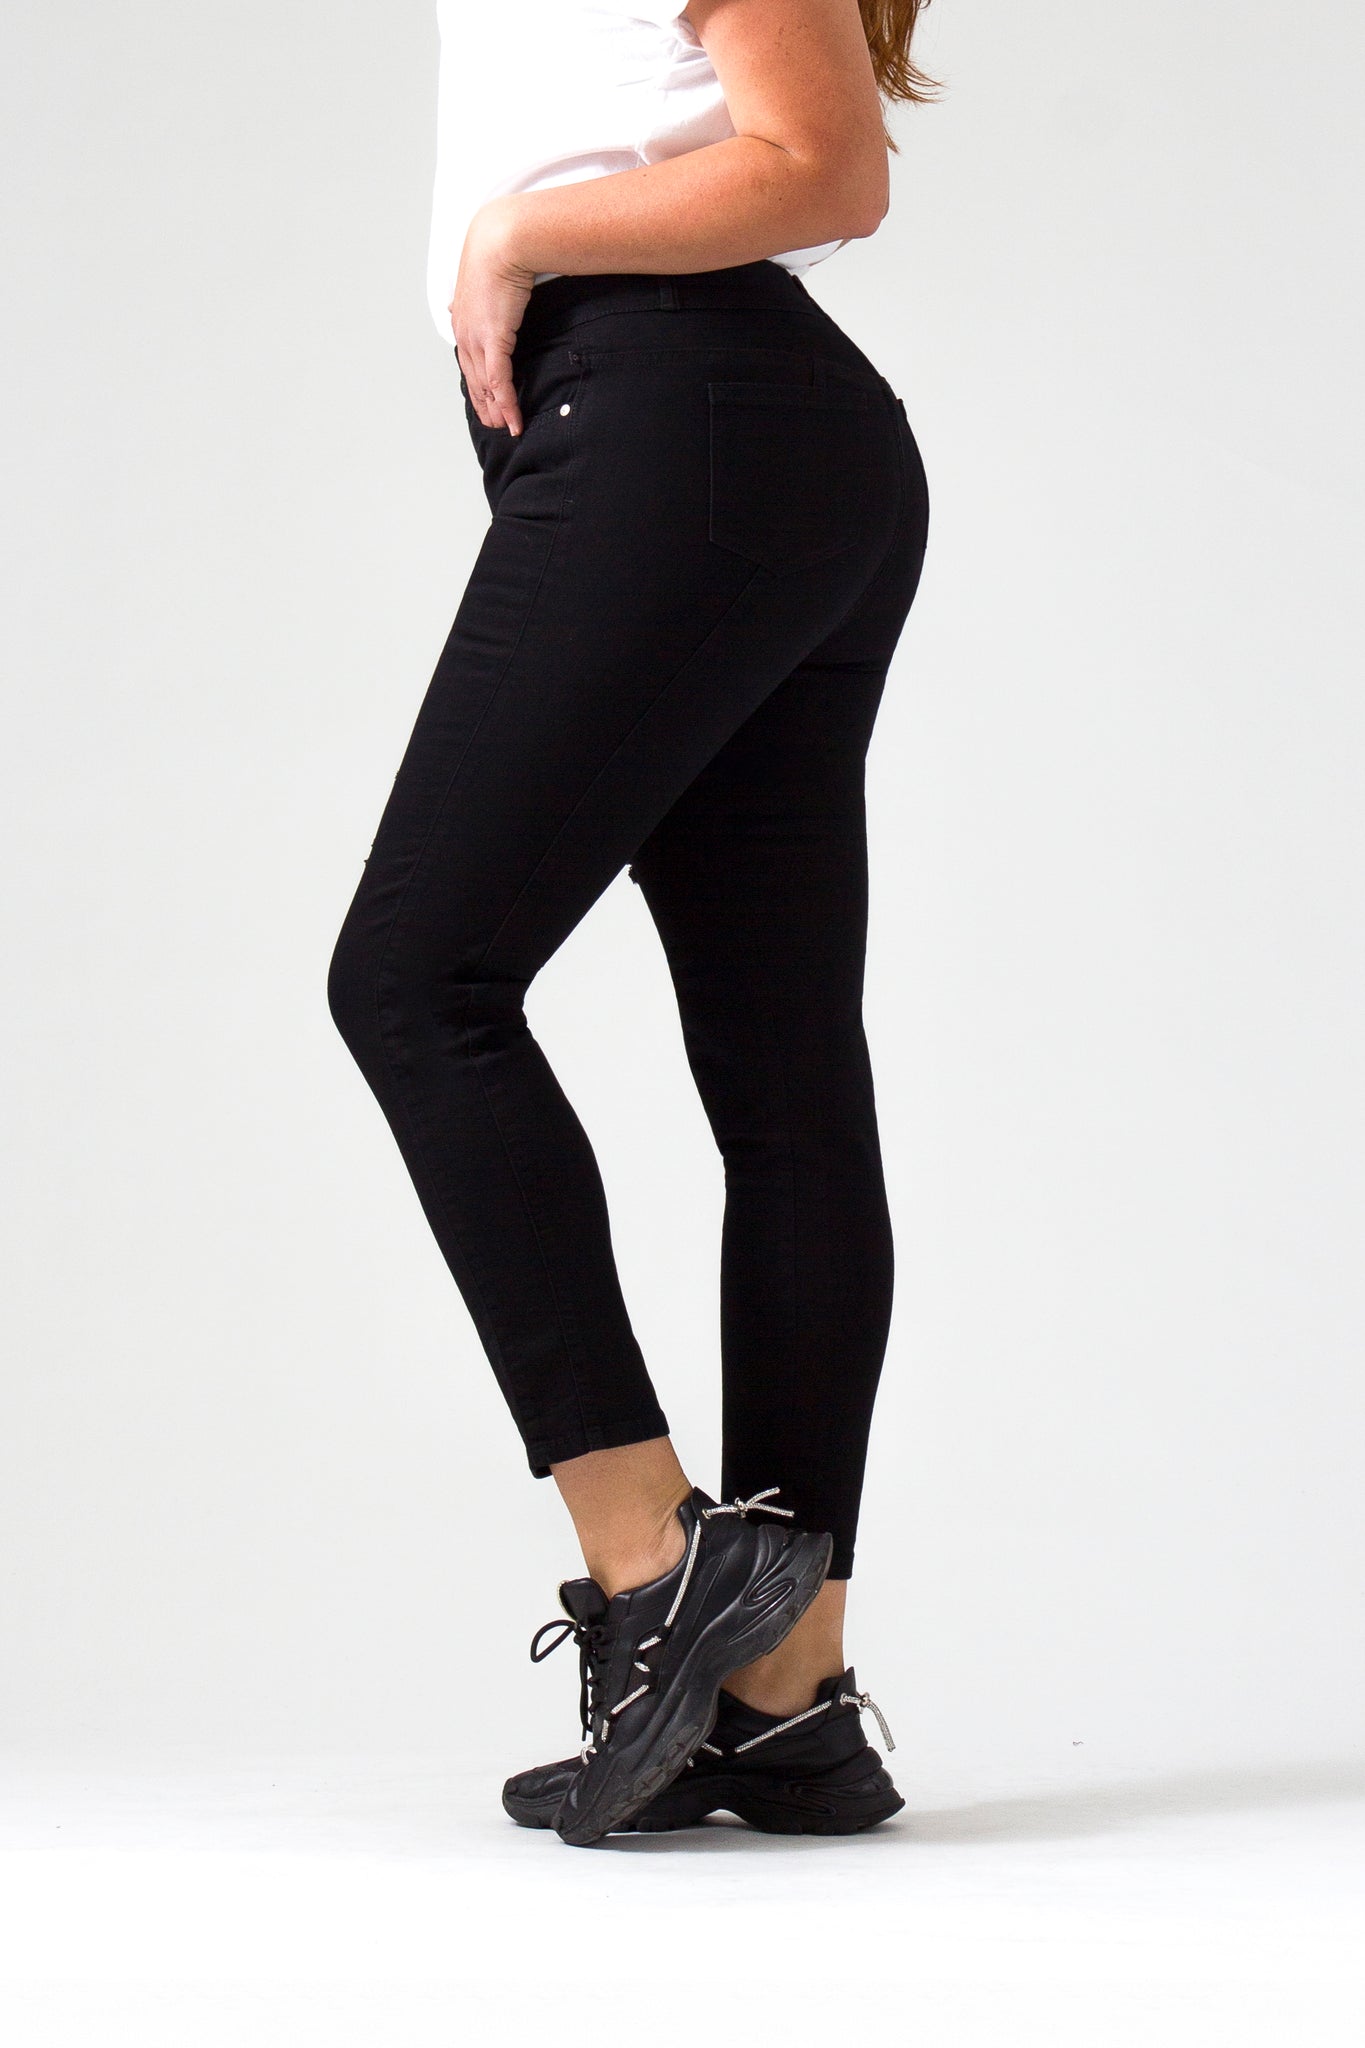 OHPOMP!® Curvy Cintura Alta Skinny Jeans OPE1466